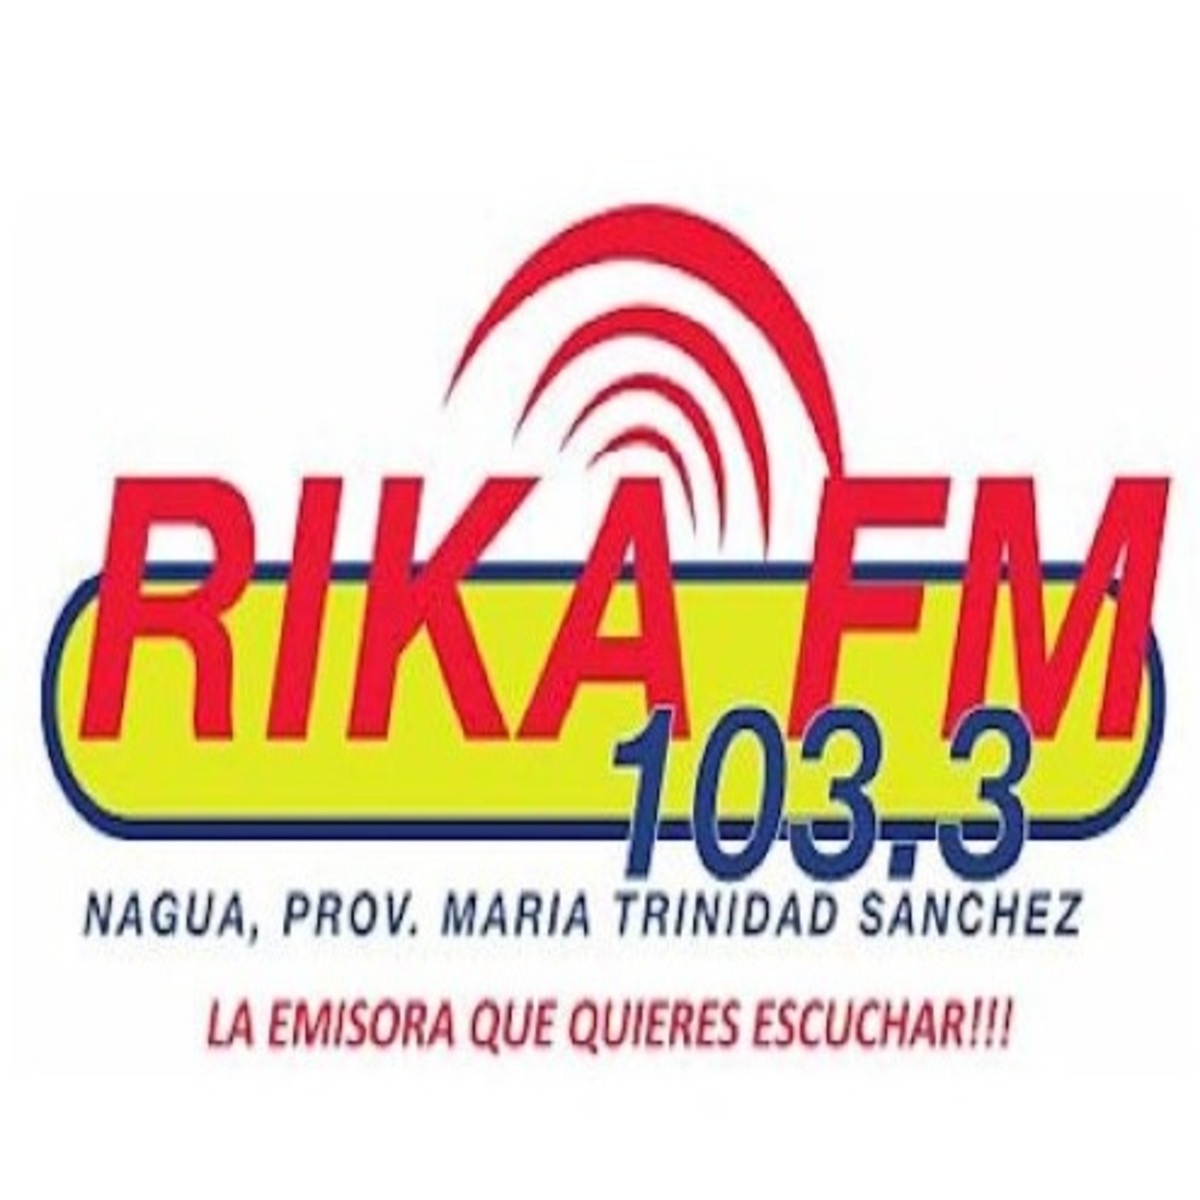 ՌԻԿԱ FM 103.3